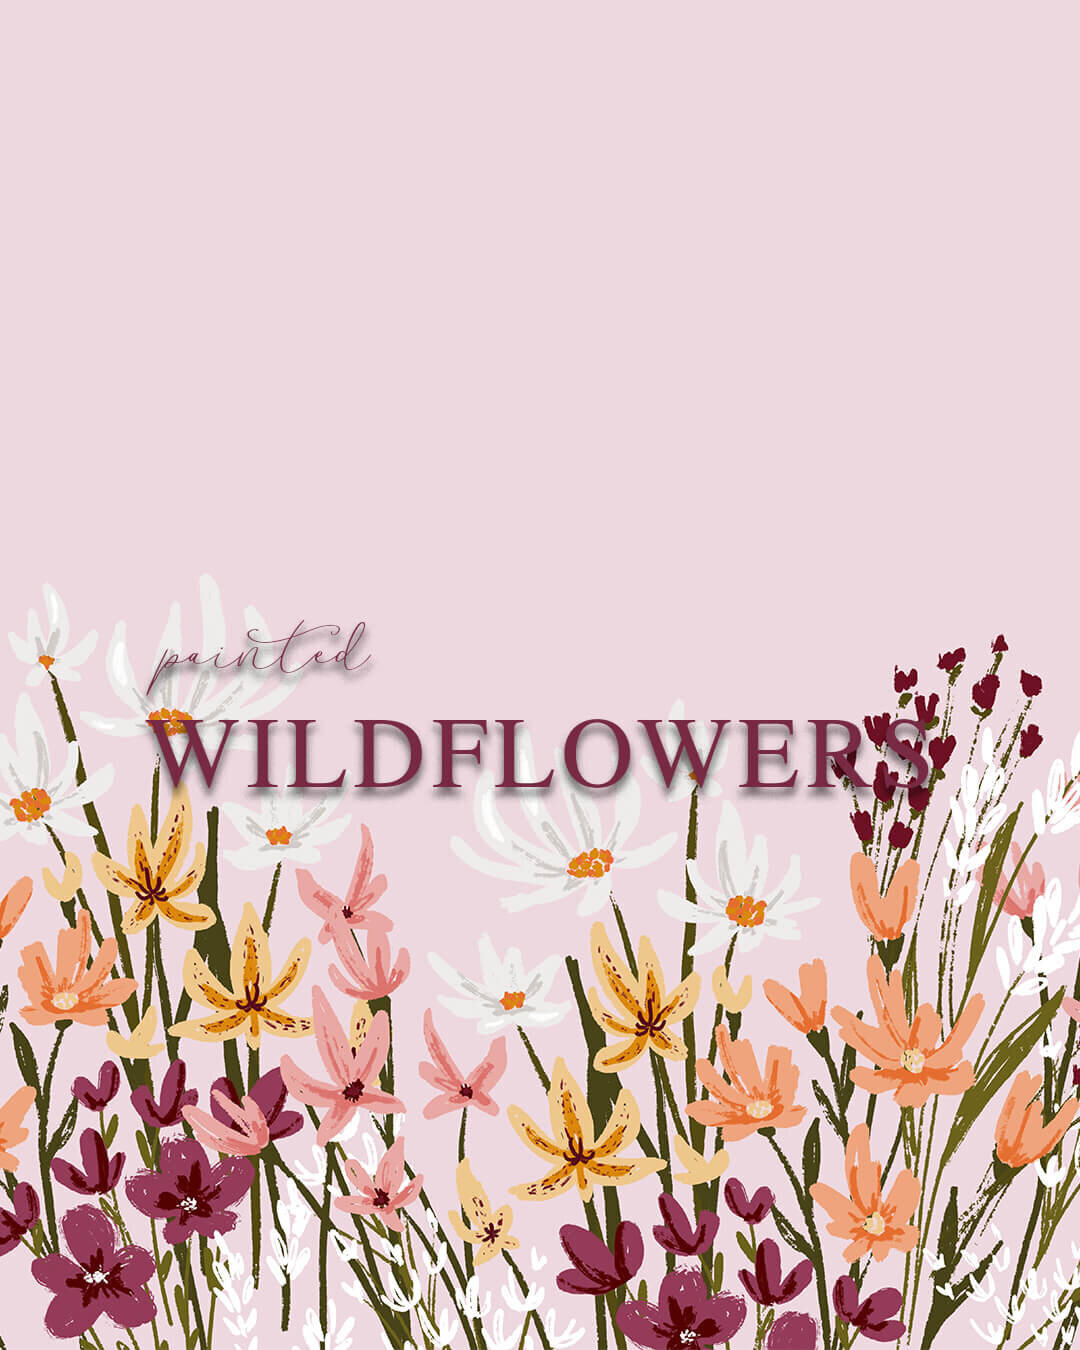 Painted wildflowers